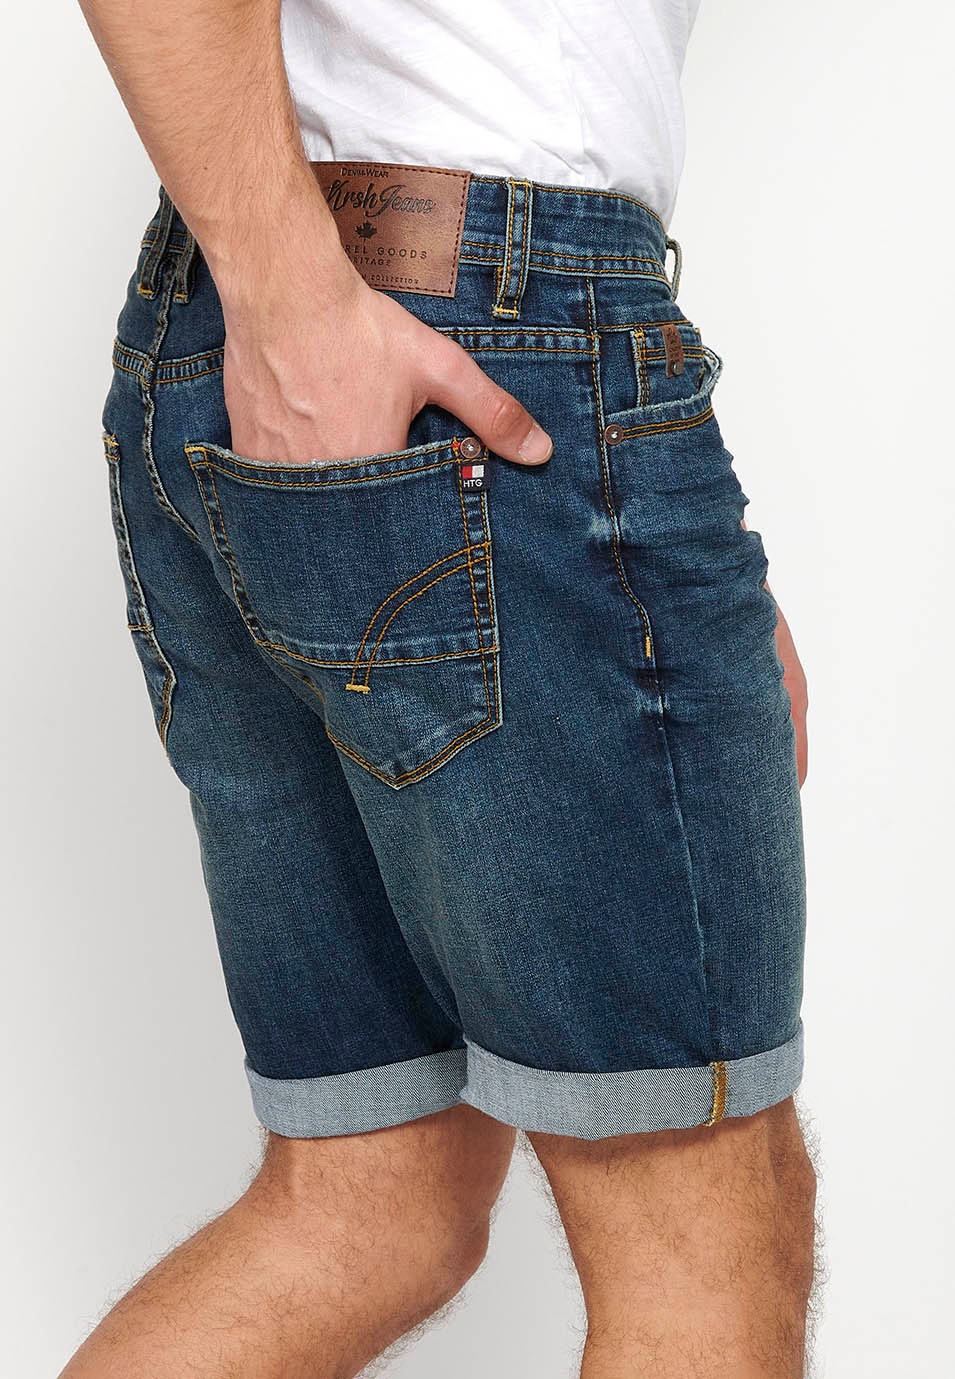 Bermuda-Jeansshorts mit Reißverschluss und Knopfverschluss vorne und fünf Taschen, eine blaue Tasche für Herren 5